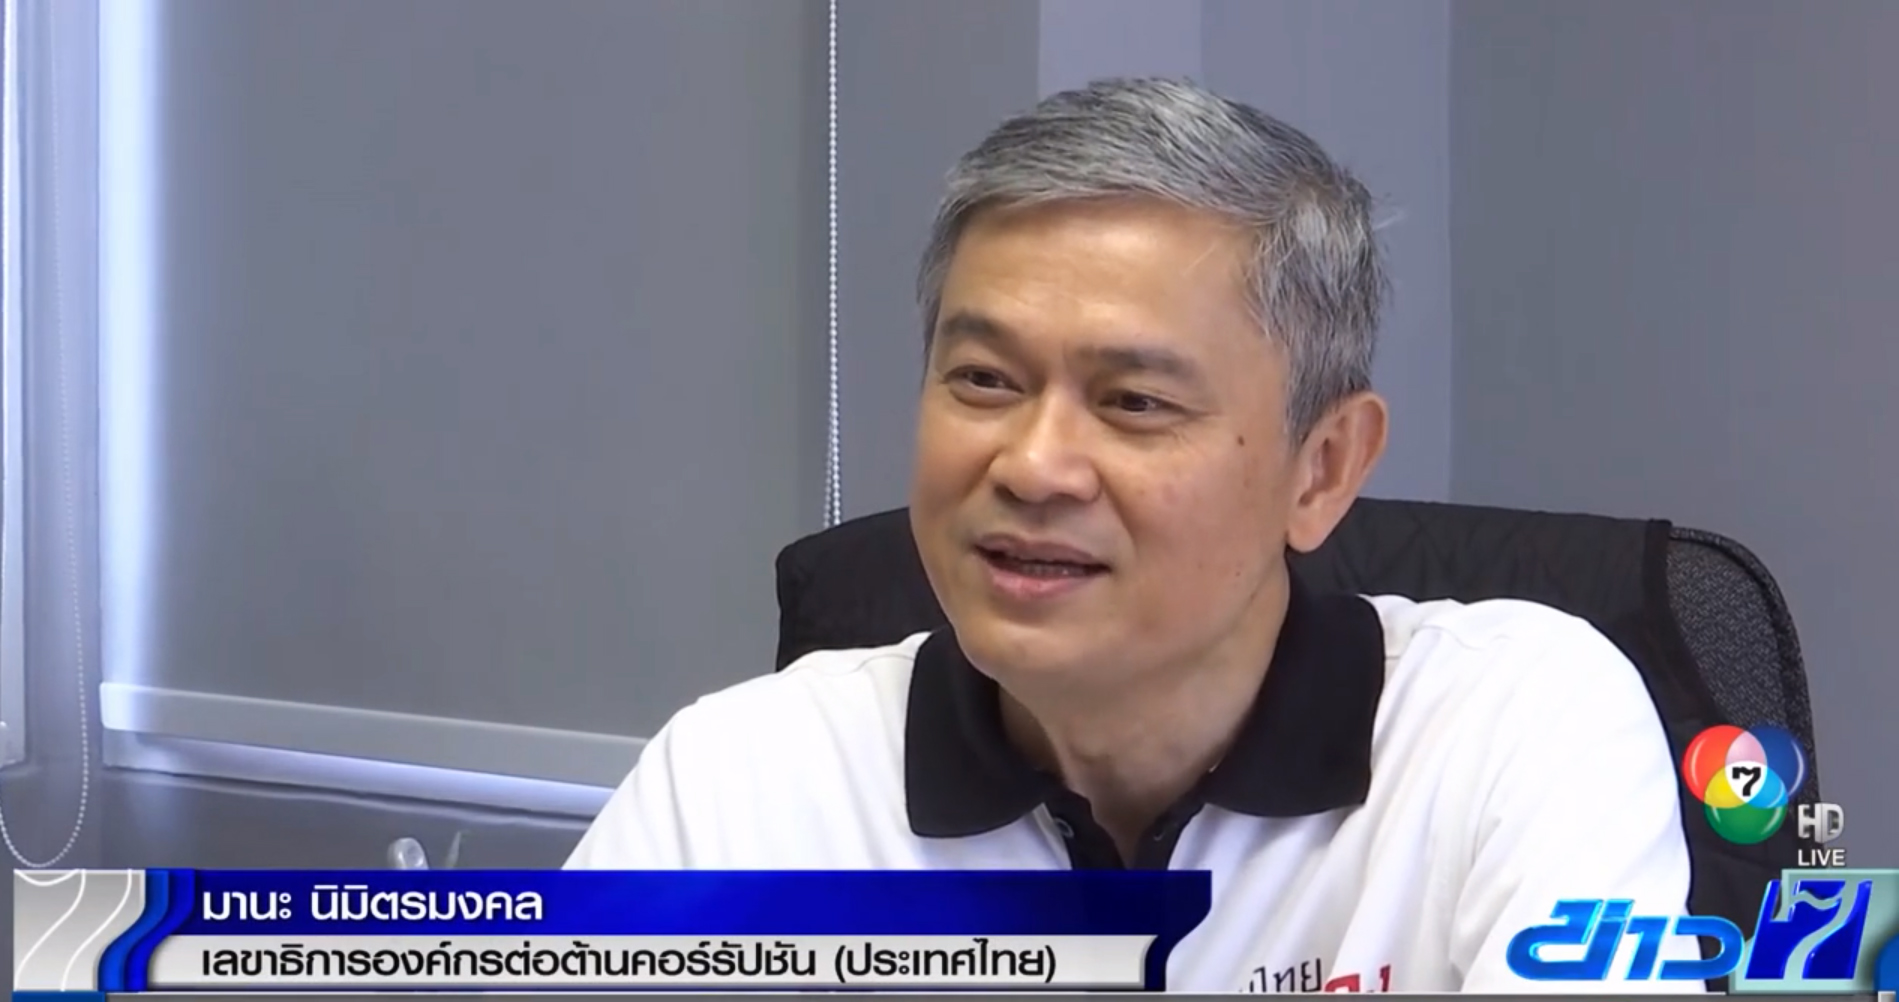 ดร.มานะ นิมิตรมงคล เลขาธิการองค์กรต่อต้านคอร์รัปชัน (ประเทศไทย)